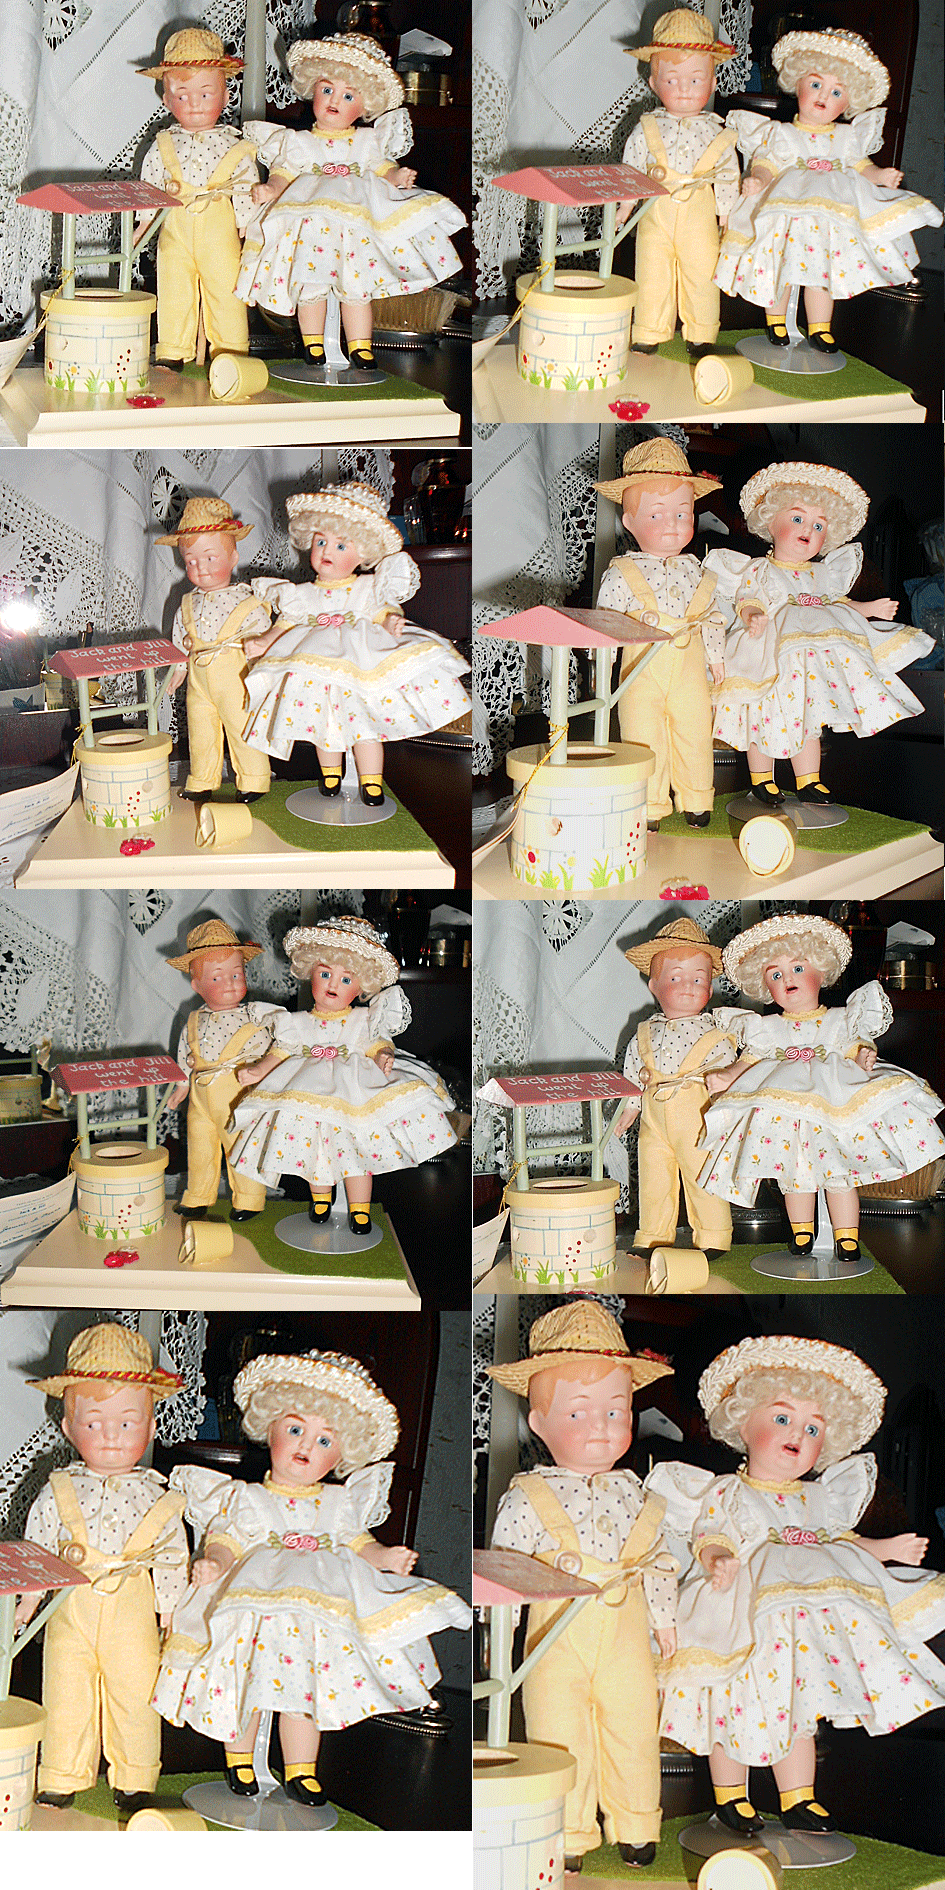 Фарфоровые куклы реплики " Джек и Джилл" автор Ди Мауро ,